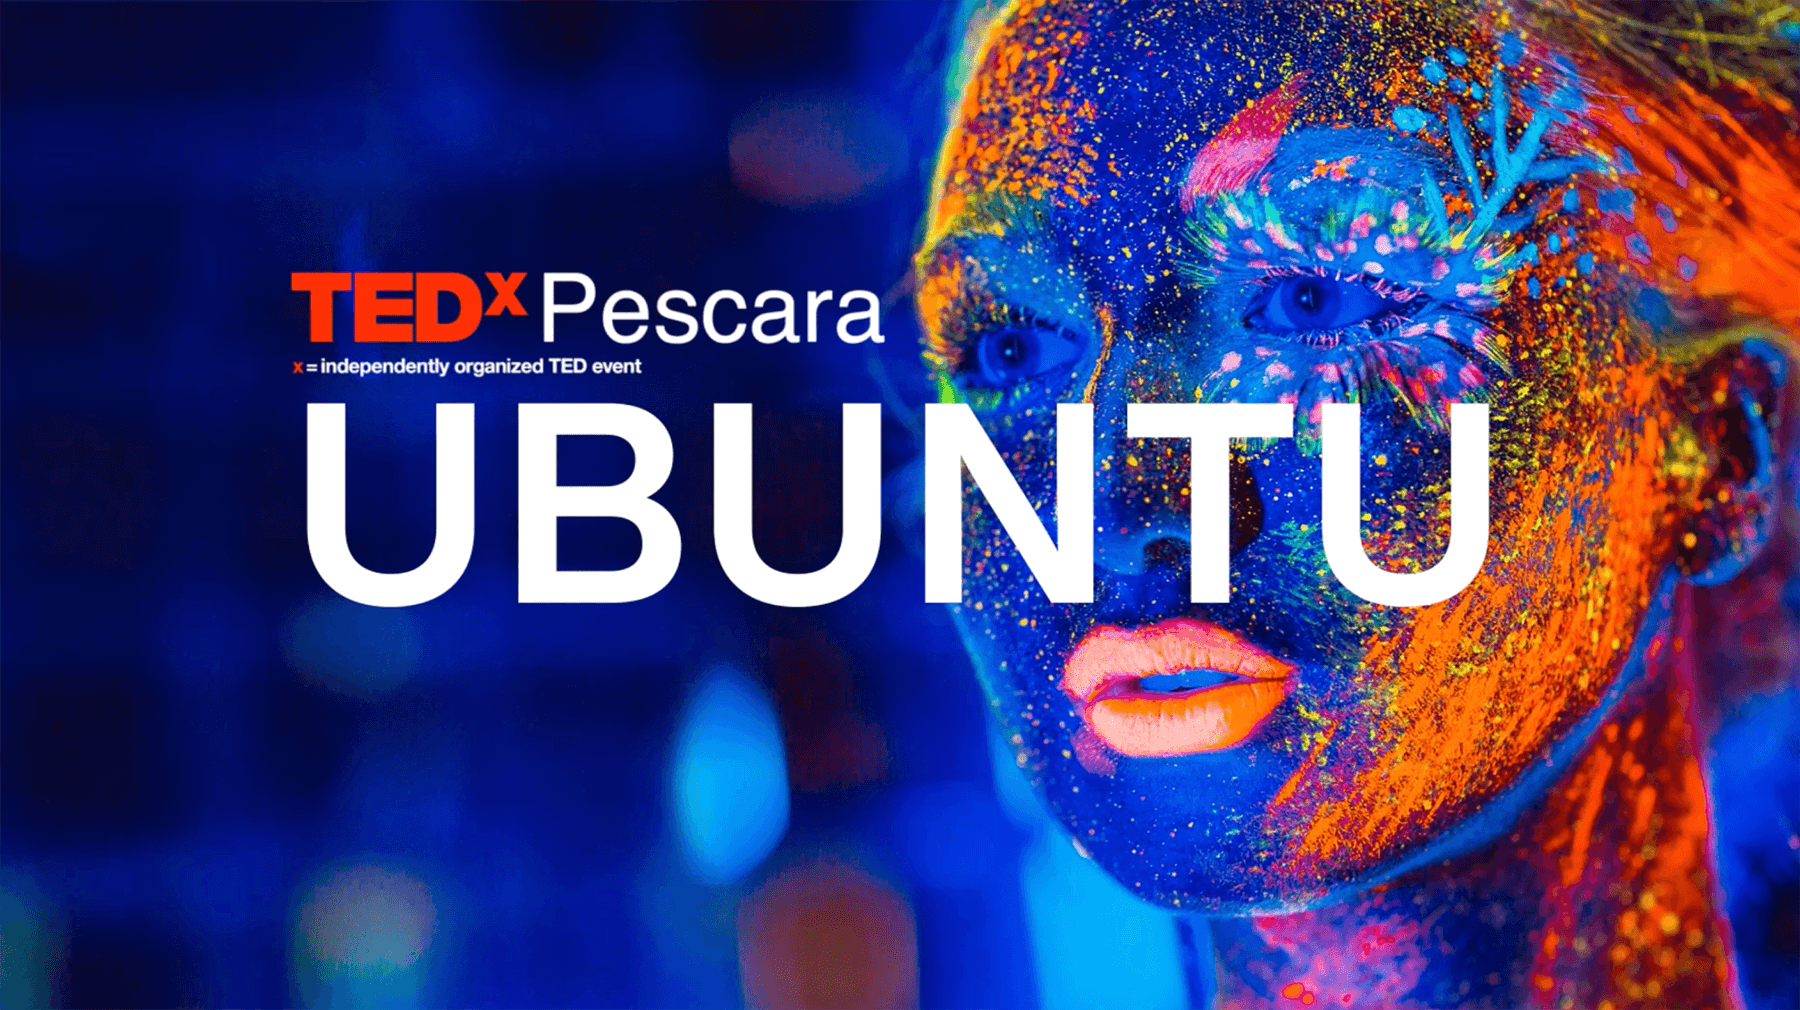 Torna TEDxPescara, l’evento che promuove idee per migliorare il mondo